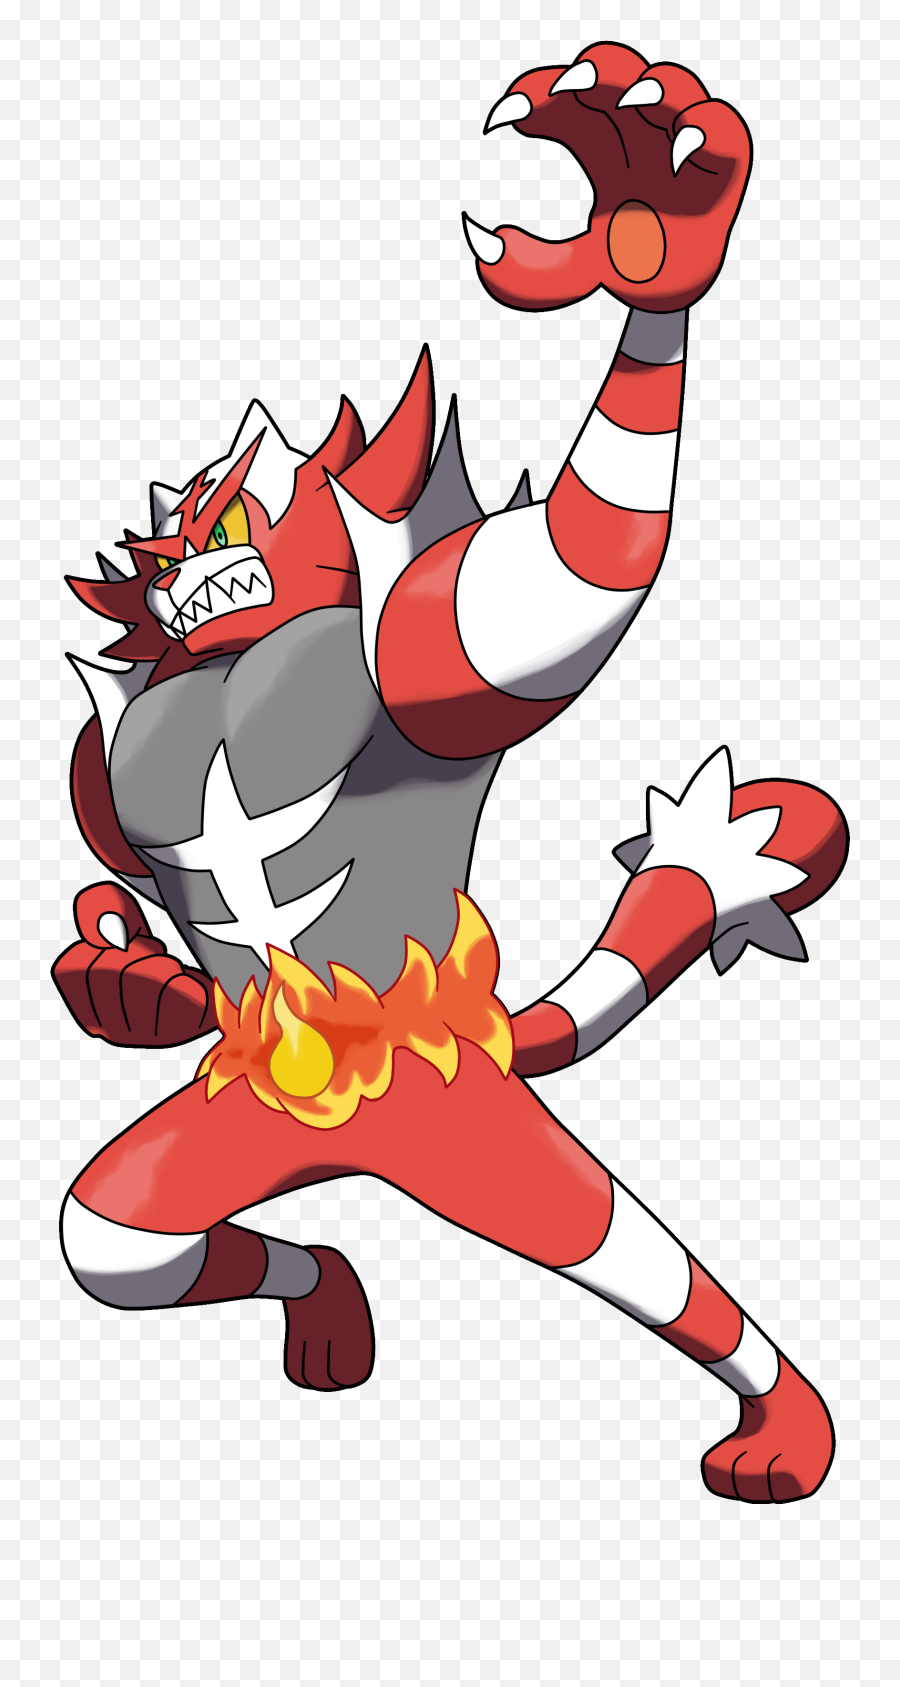 Shiny Incineroar By Fellerup - Pokemon Alola Fire Types Png,Incineroar Png